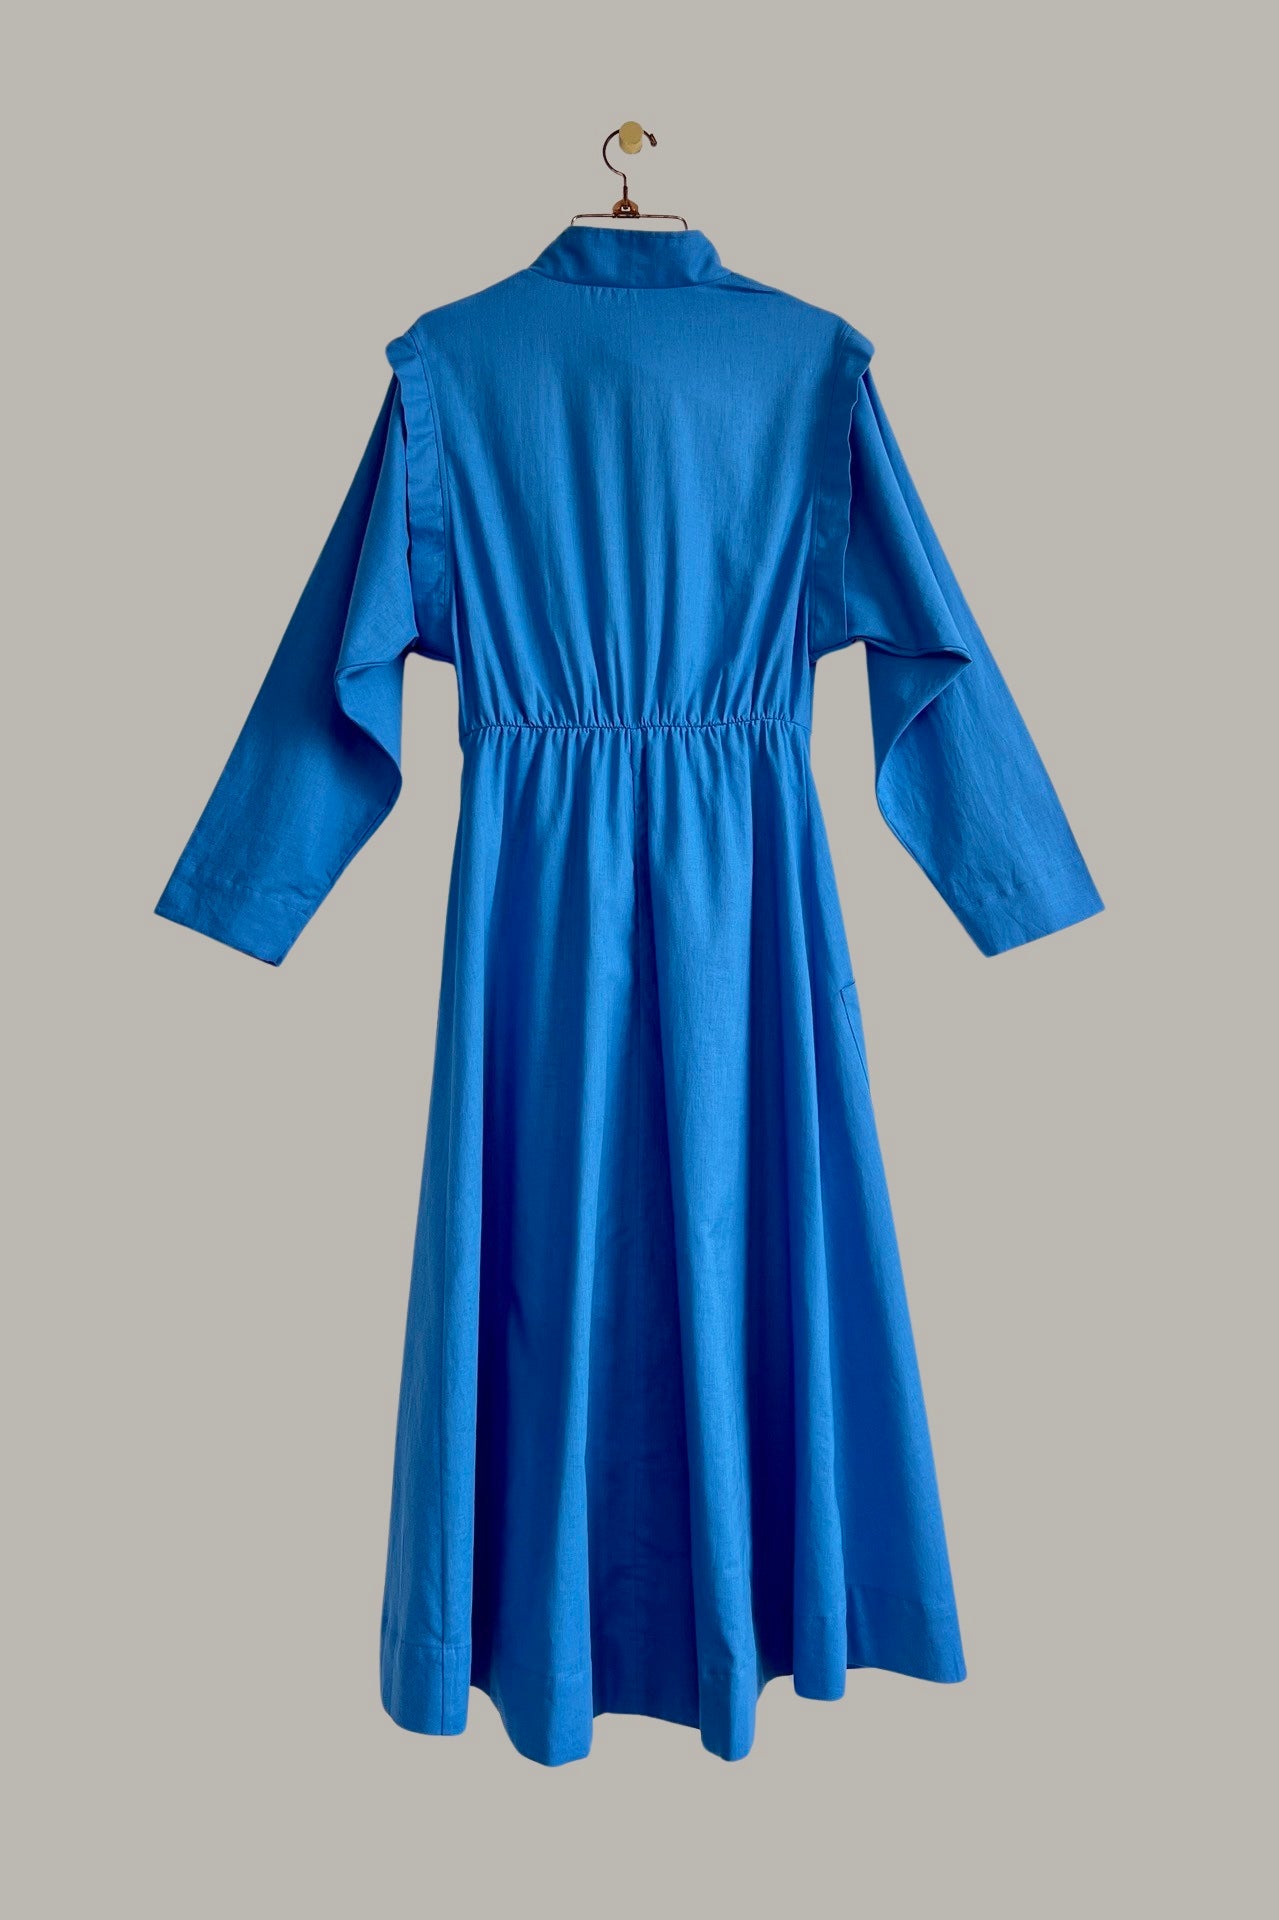 Voyage Coat Dress French Blue Linen/Cotton